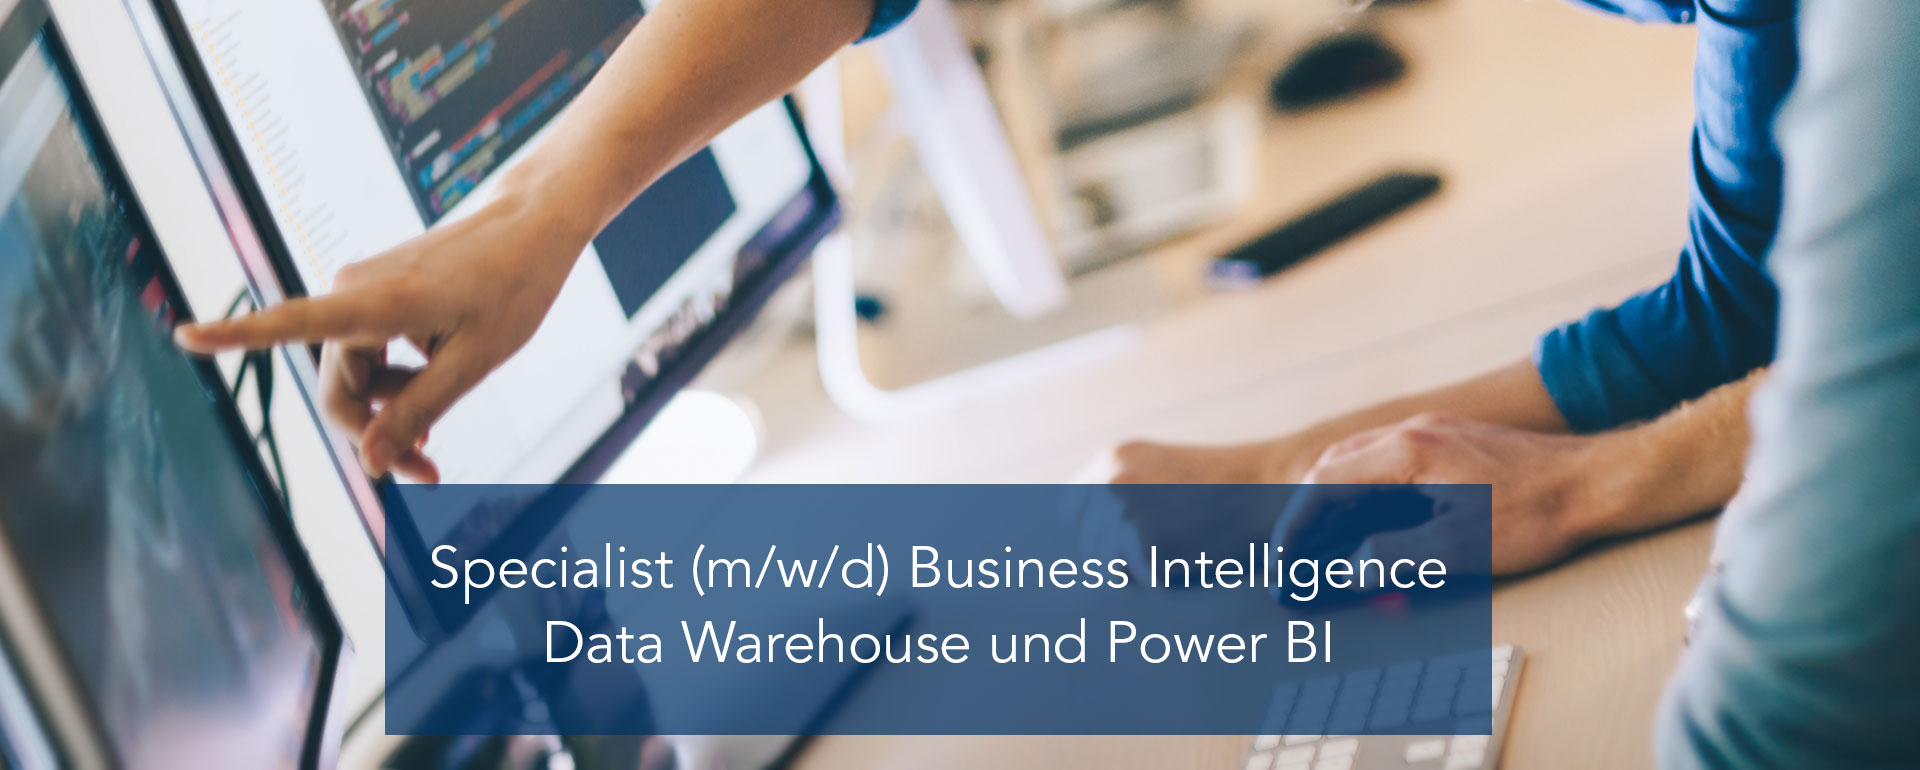 Specialist (m/w/d) Business Intelligence – Data Warehouse und Power BI